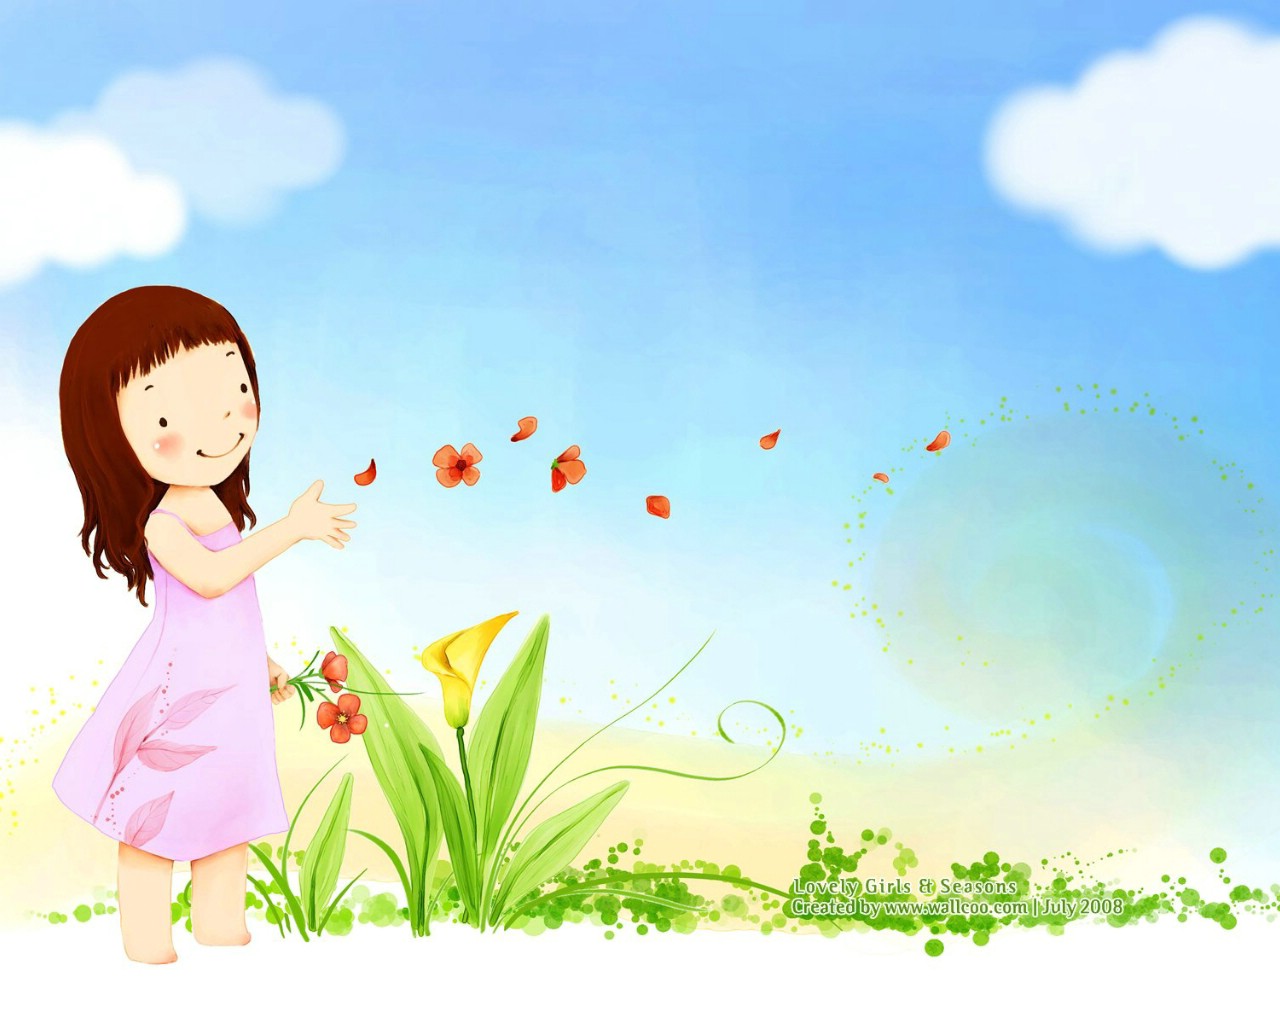 壁纸1280×1024韩国可爱小女孩插画壁纸,韩国儿童插画-可爱小女孩壁纸图片-插画壁纸-插画图片素材-桌面壁纸